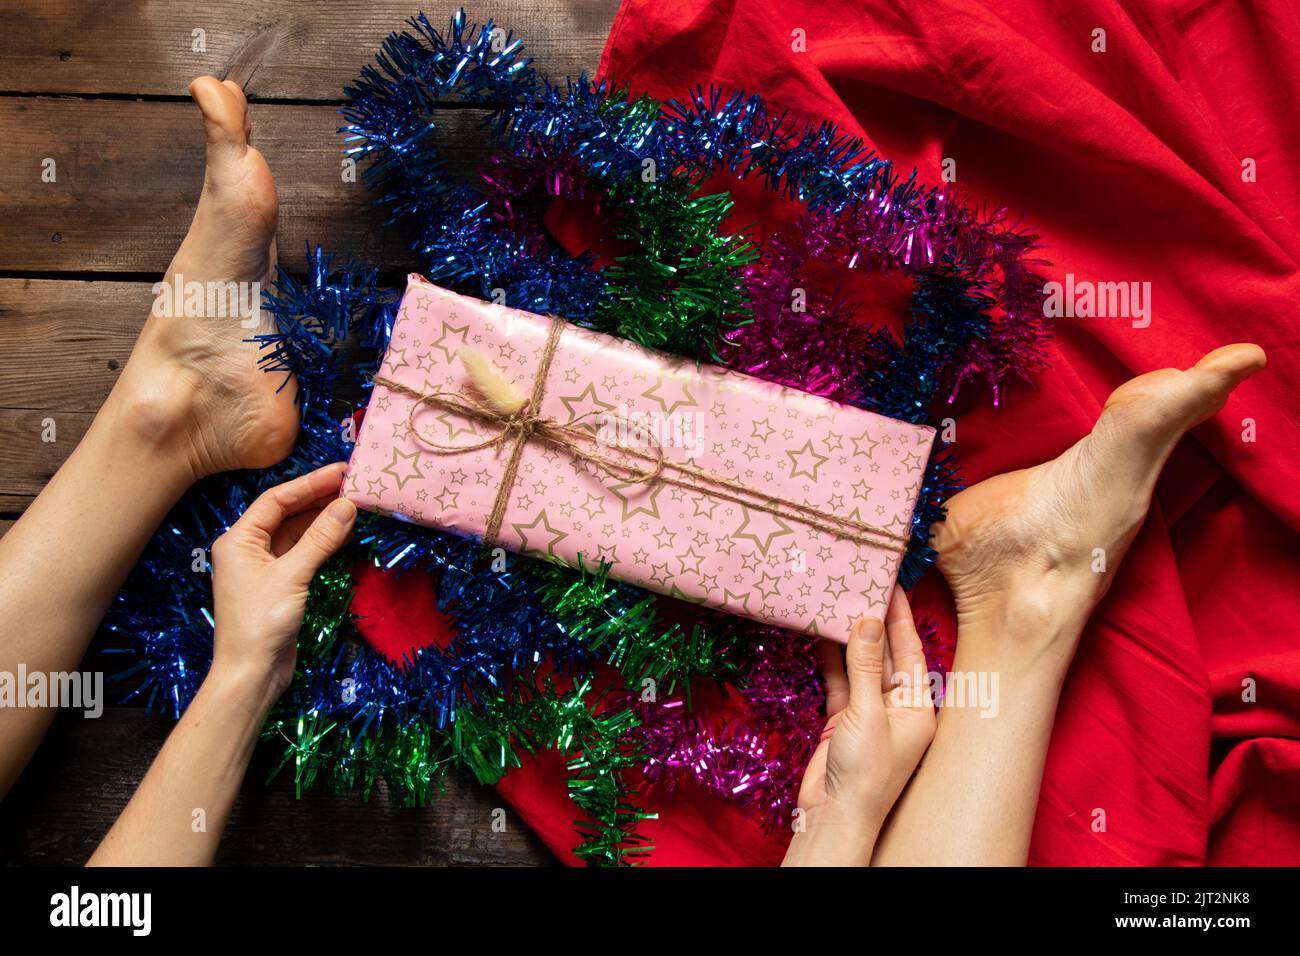 Mädchen entfaltet ein Geburtstagsgeschenk auf dem Holzboden des Hauses, Urlaub, ein Geschenk zu geben Stockfoto